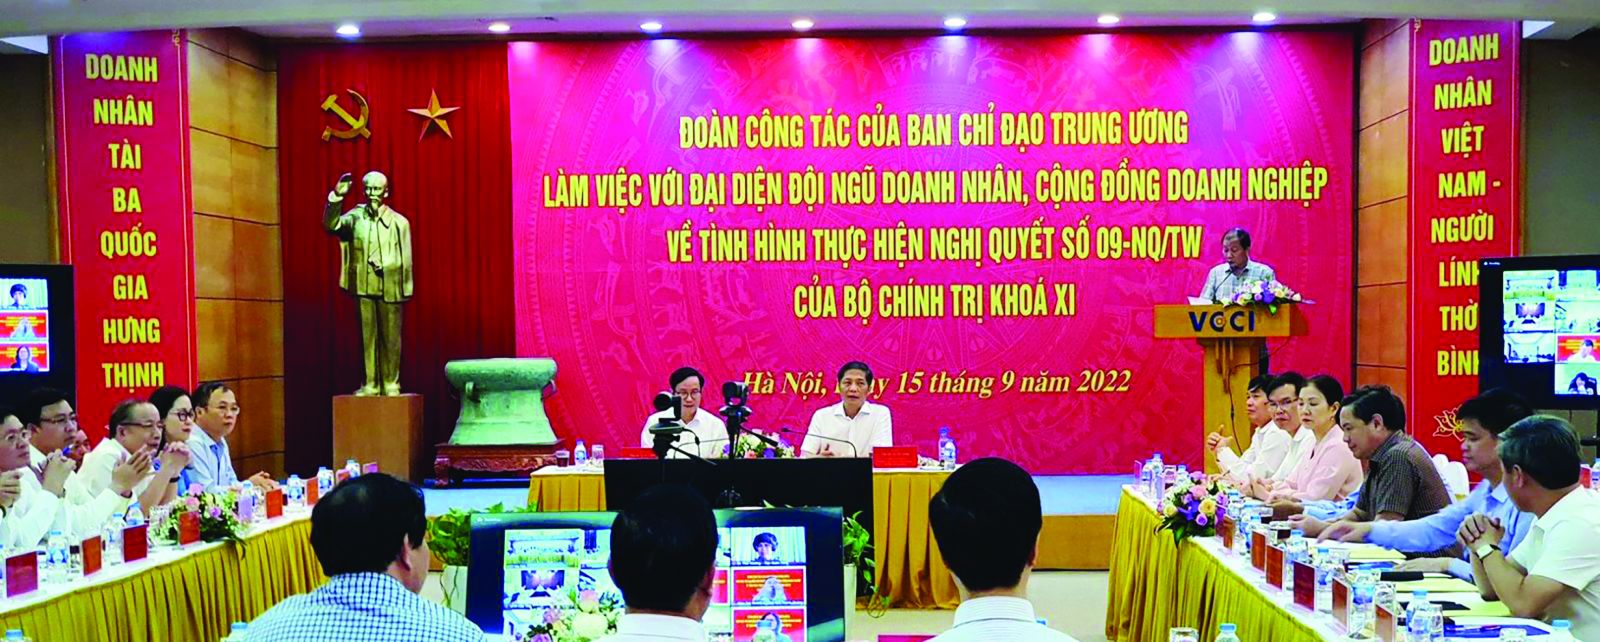 Trưởng ban Kinh tế Trung ương Trần Tuấn Anh và Chủ tịch VCCI Phạm Tấn Công Ban làm việc với các doanh nghiệp, doanh nhân về tình hình thực hiện Nghị quyết số 09-NQ/TW.